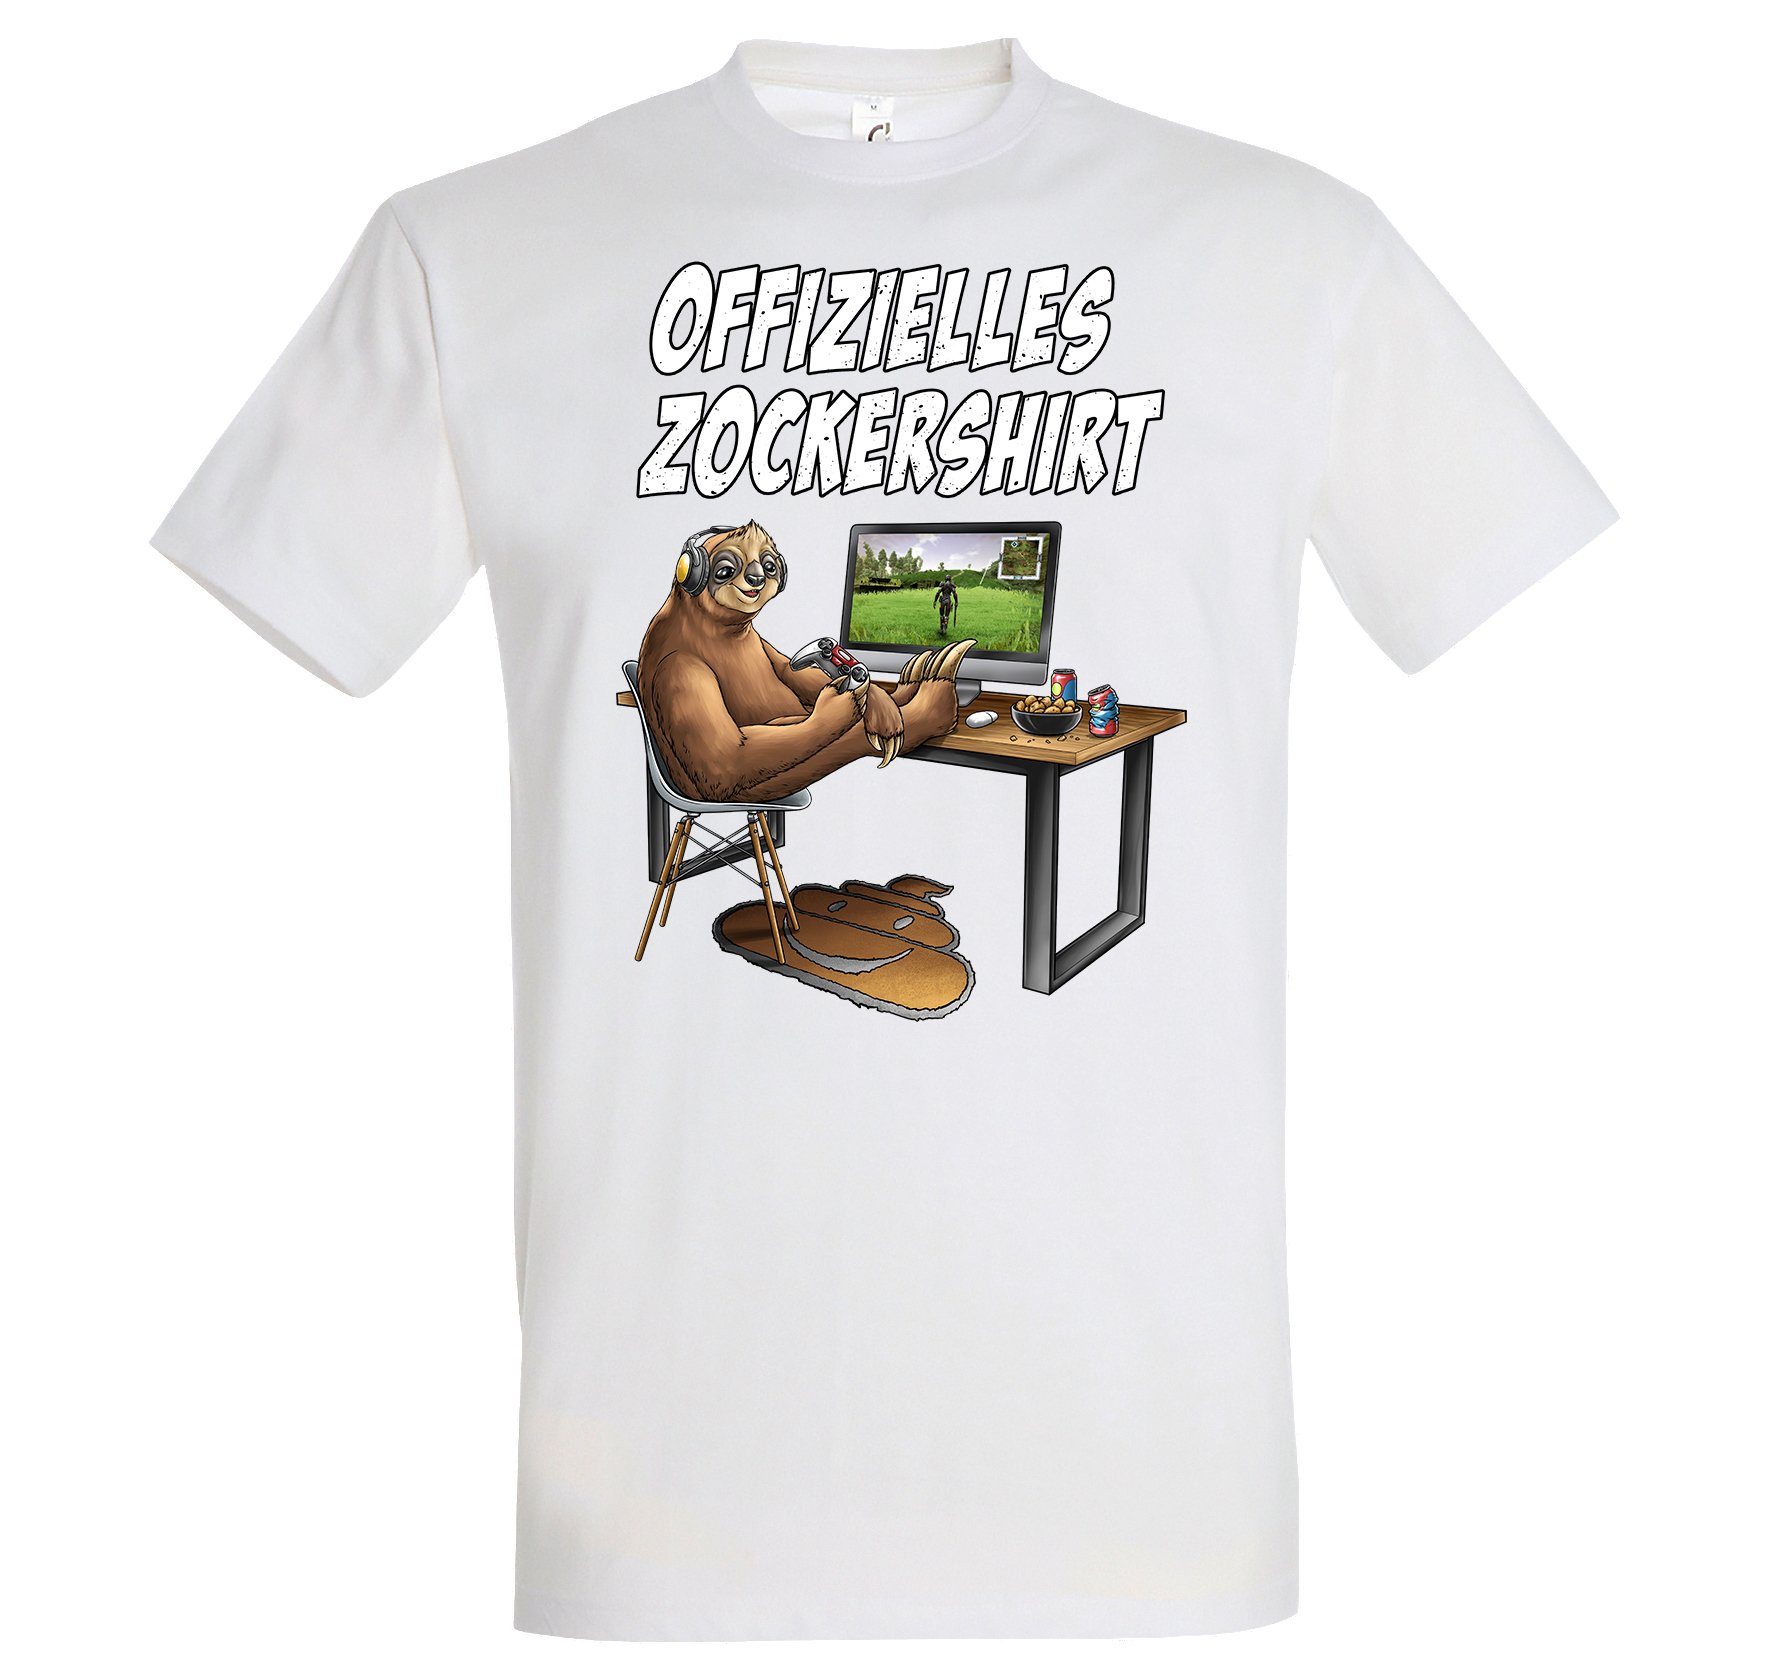 Youth Designz T-Shirt Herren mit Offizielles Gaming Frontprint Zockershirt Weiß lustigem